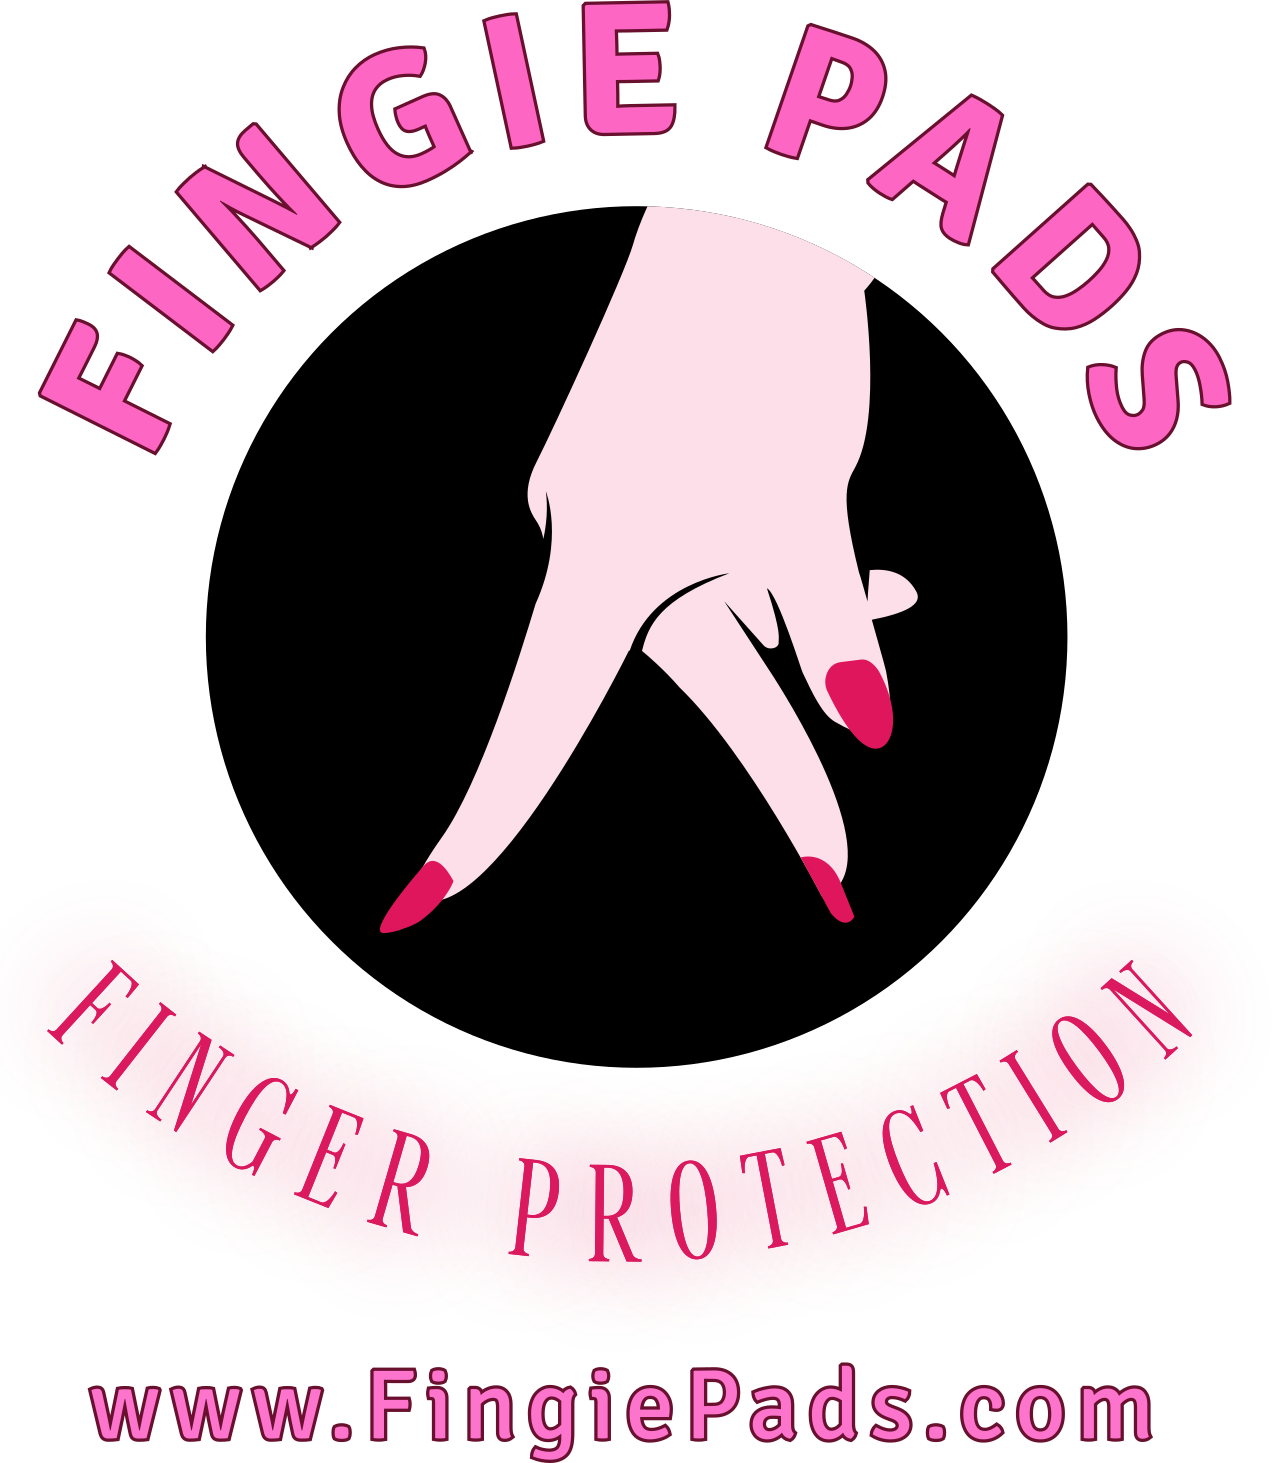 FINGIE PADS's logo